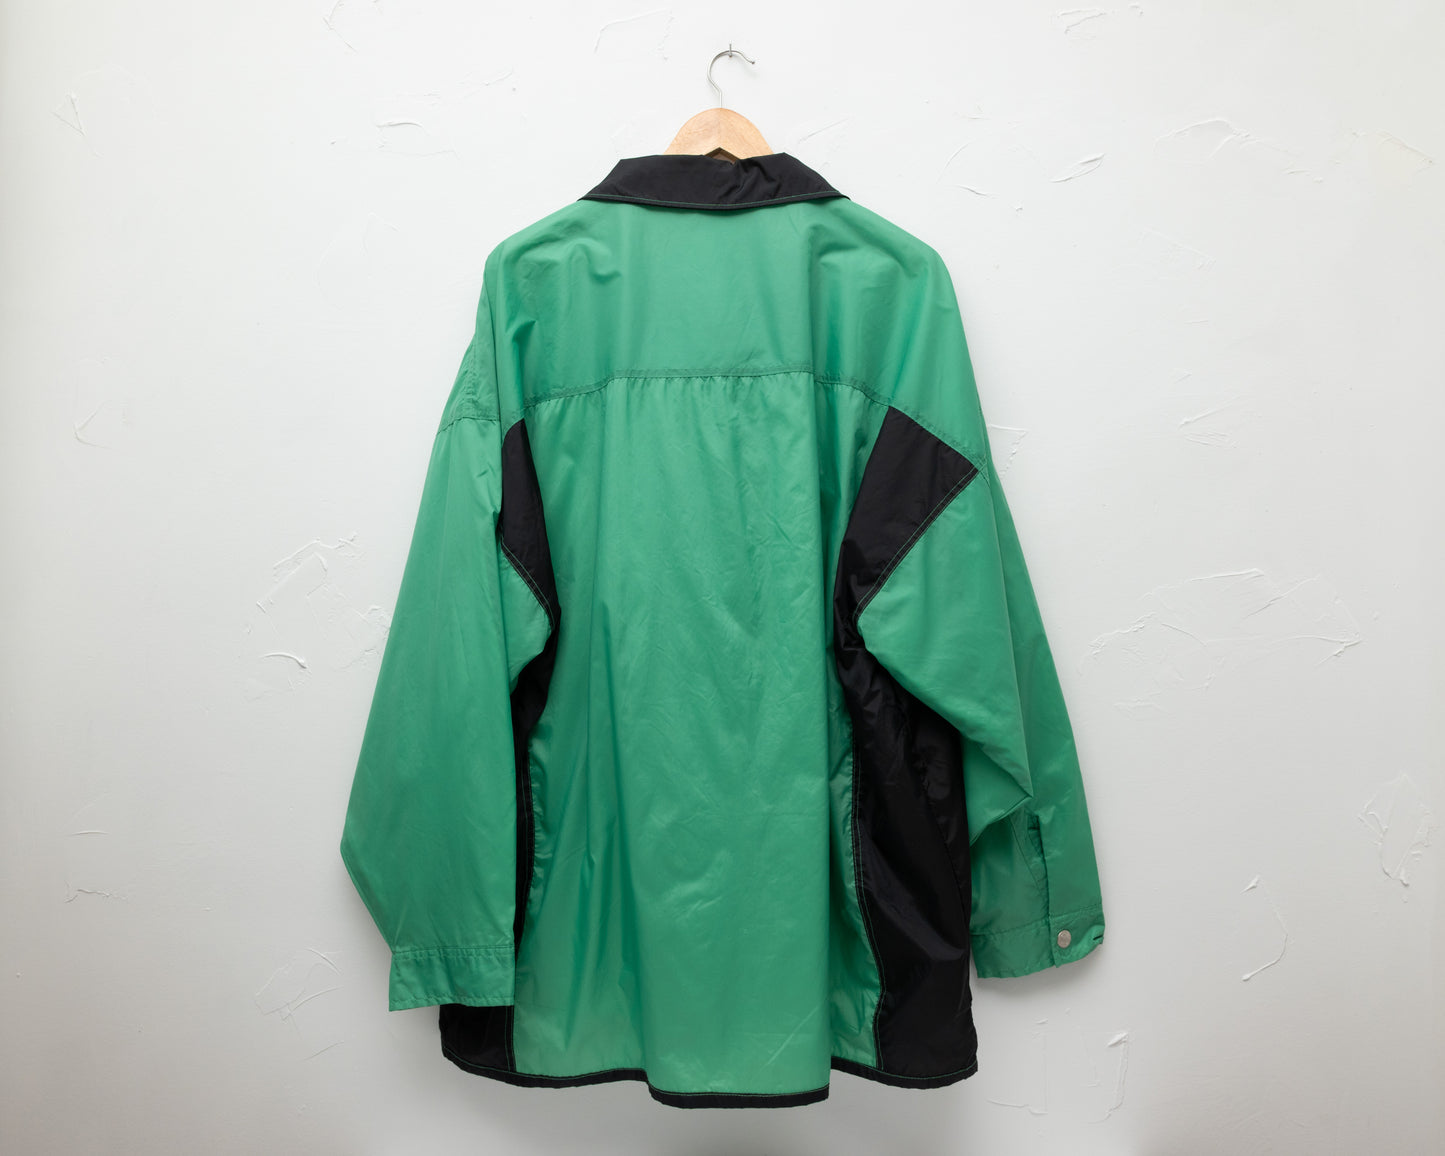 Veste XL zippée en nylon vert